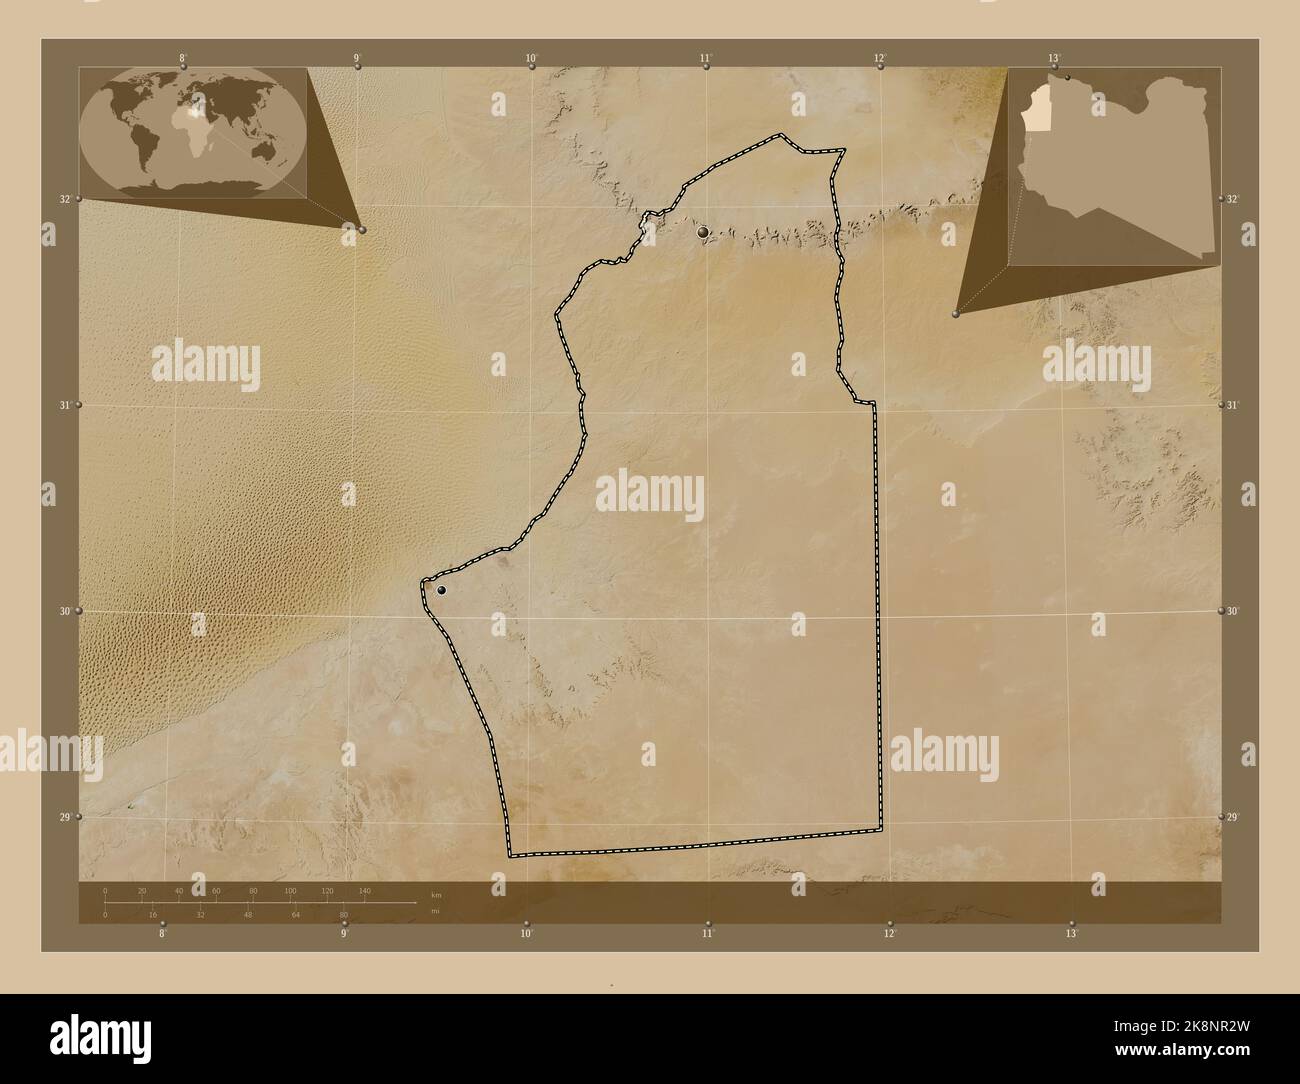 Nalut, Bezirk von Libyen. Satellitenkarte mit niedriger Auflösung. Standorte der wichtigsten Städte der Region. Karten für zusätzliche Eckposition Stockfoto